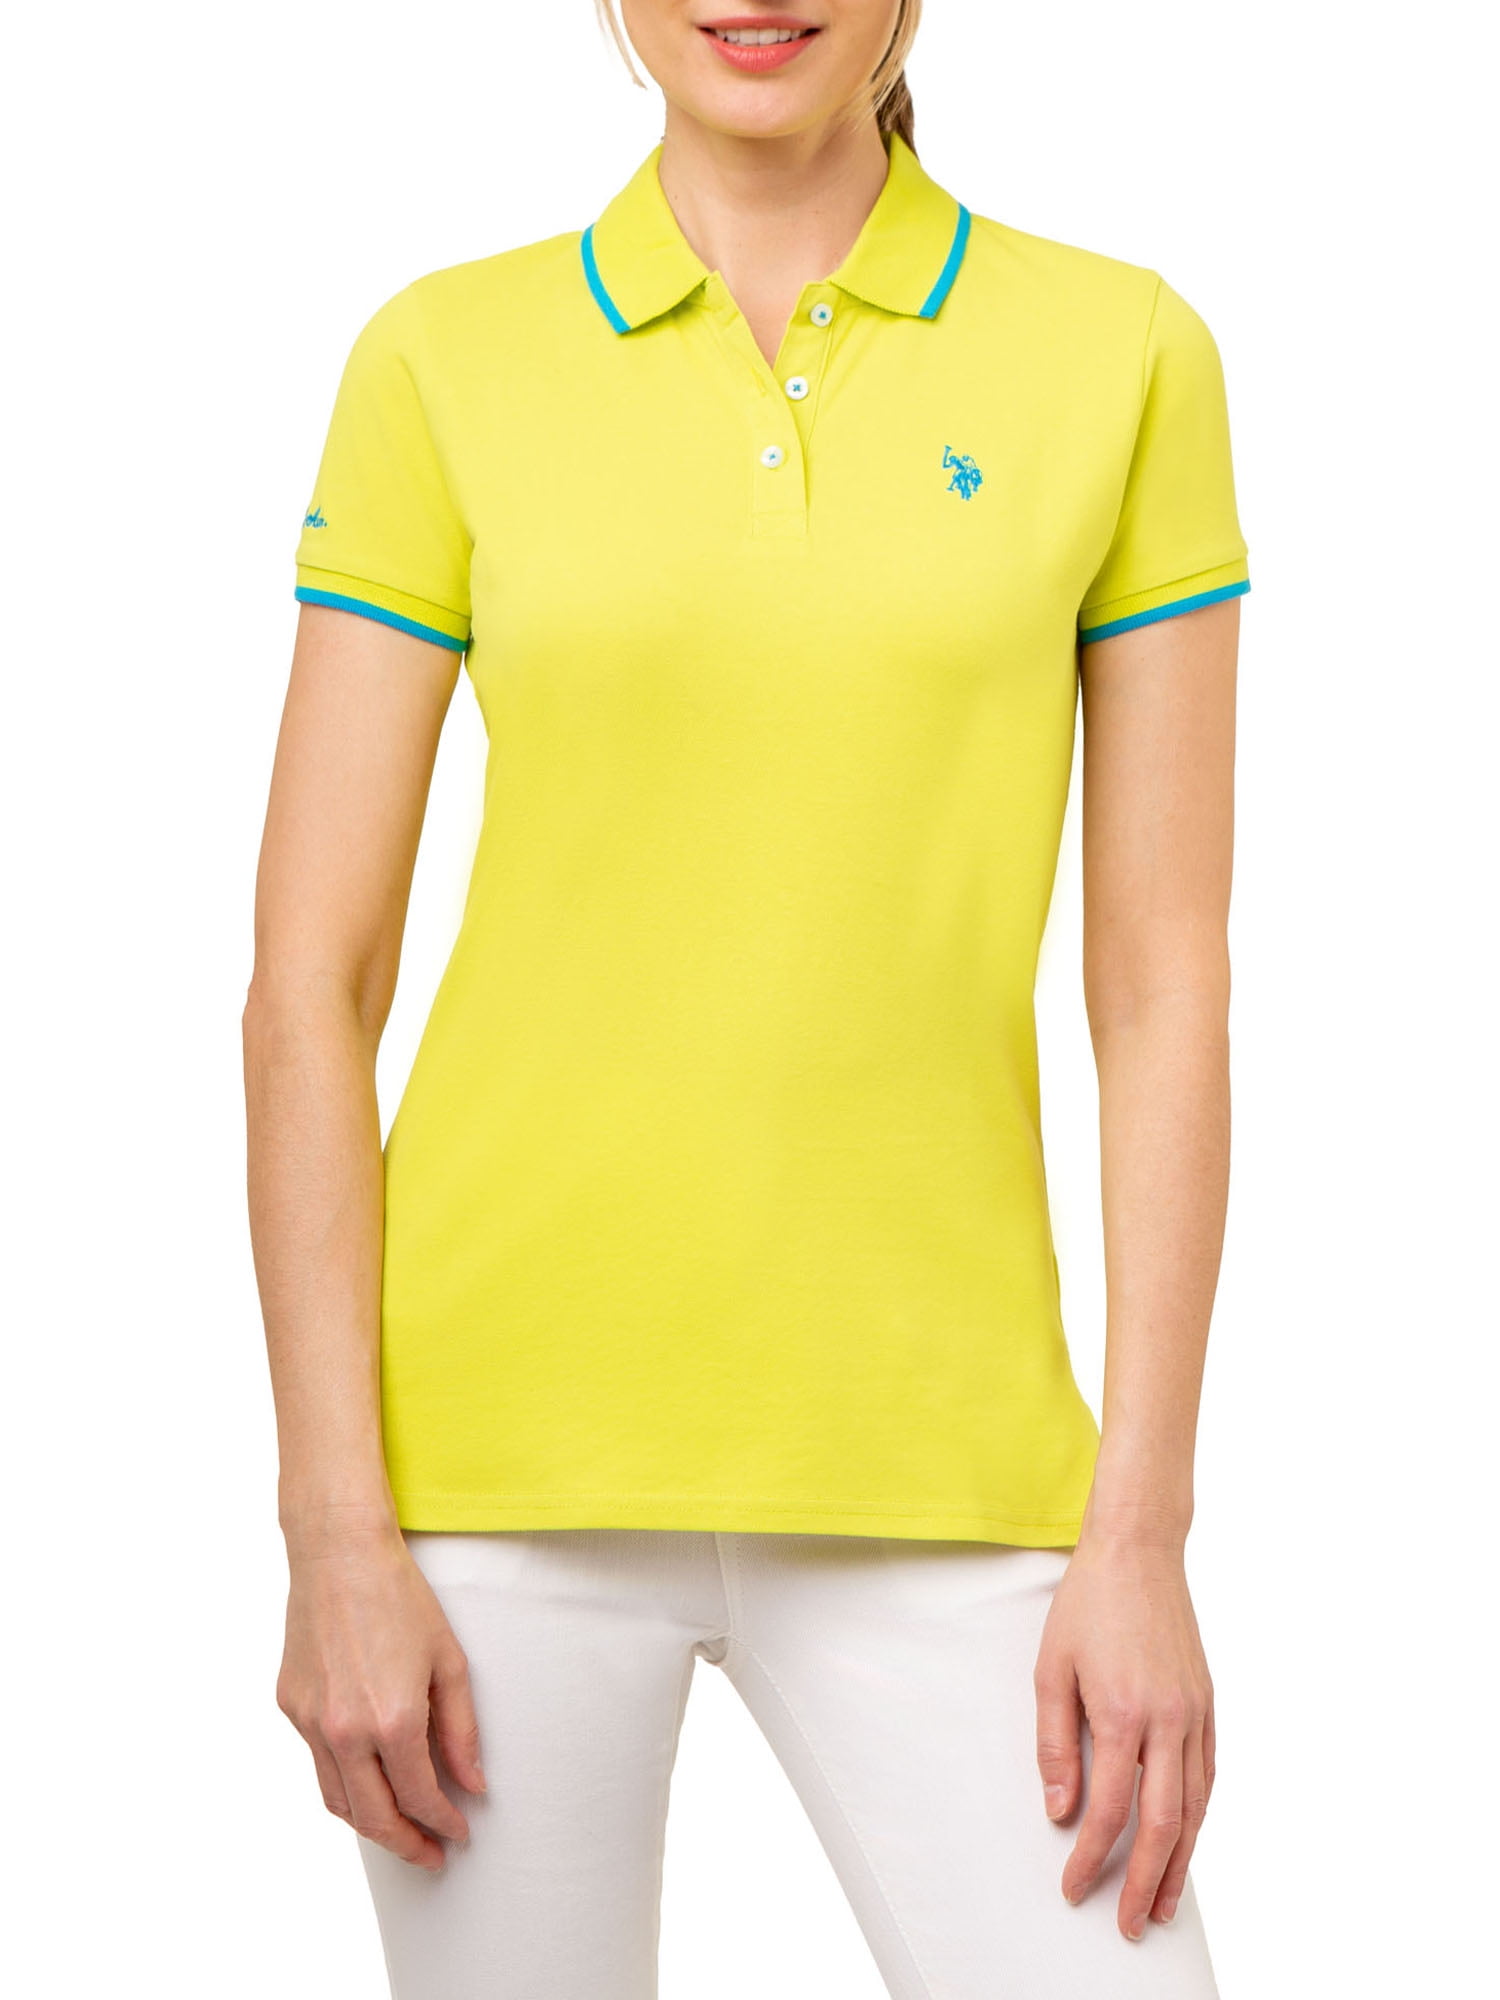 U.S. Polo Assn. Women's Tipped Polo Shirt - Walmart.com